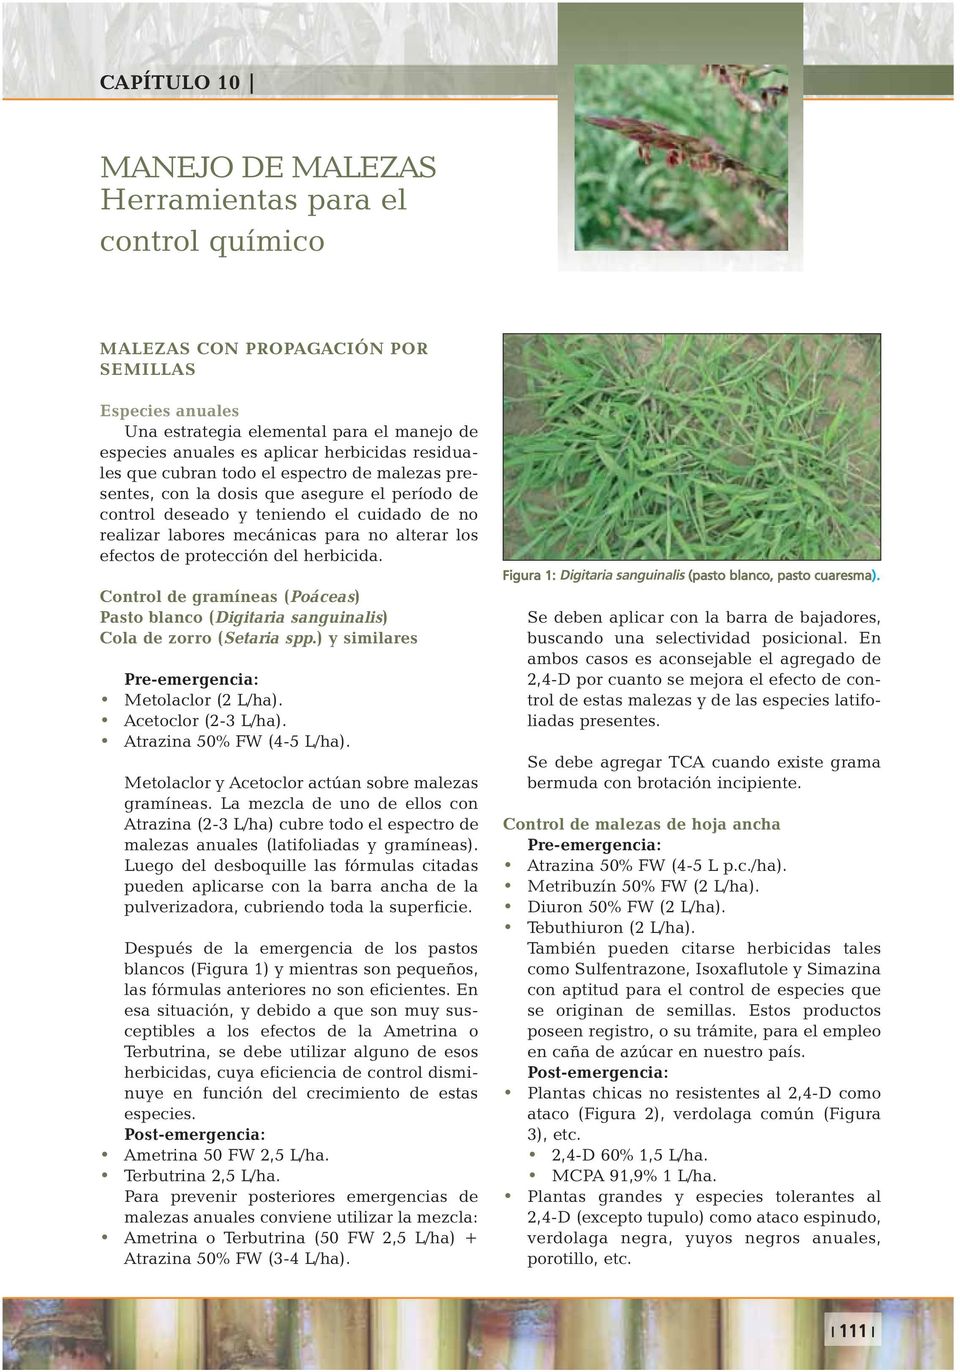 los efectos de protección del herbicida. Control de gramíneas (Poáceas) Pasto blanco (Digitaria sanguinalis) Cola de zorro (Setaria spp.) y similares Metolaclor (2 L/ha). Acetoclor (2-3 L/ha).